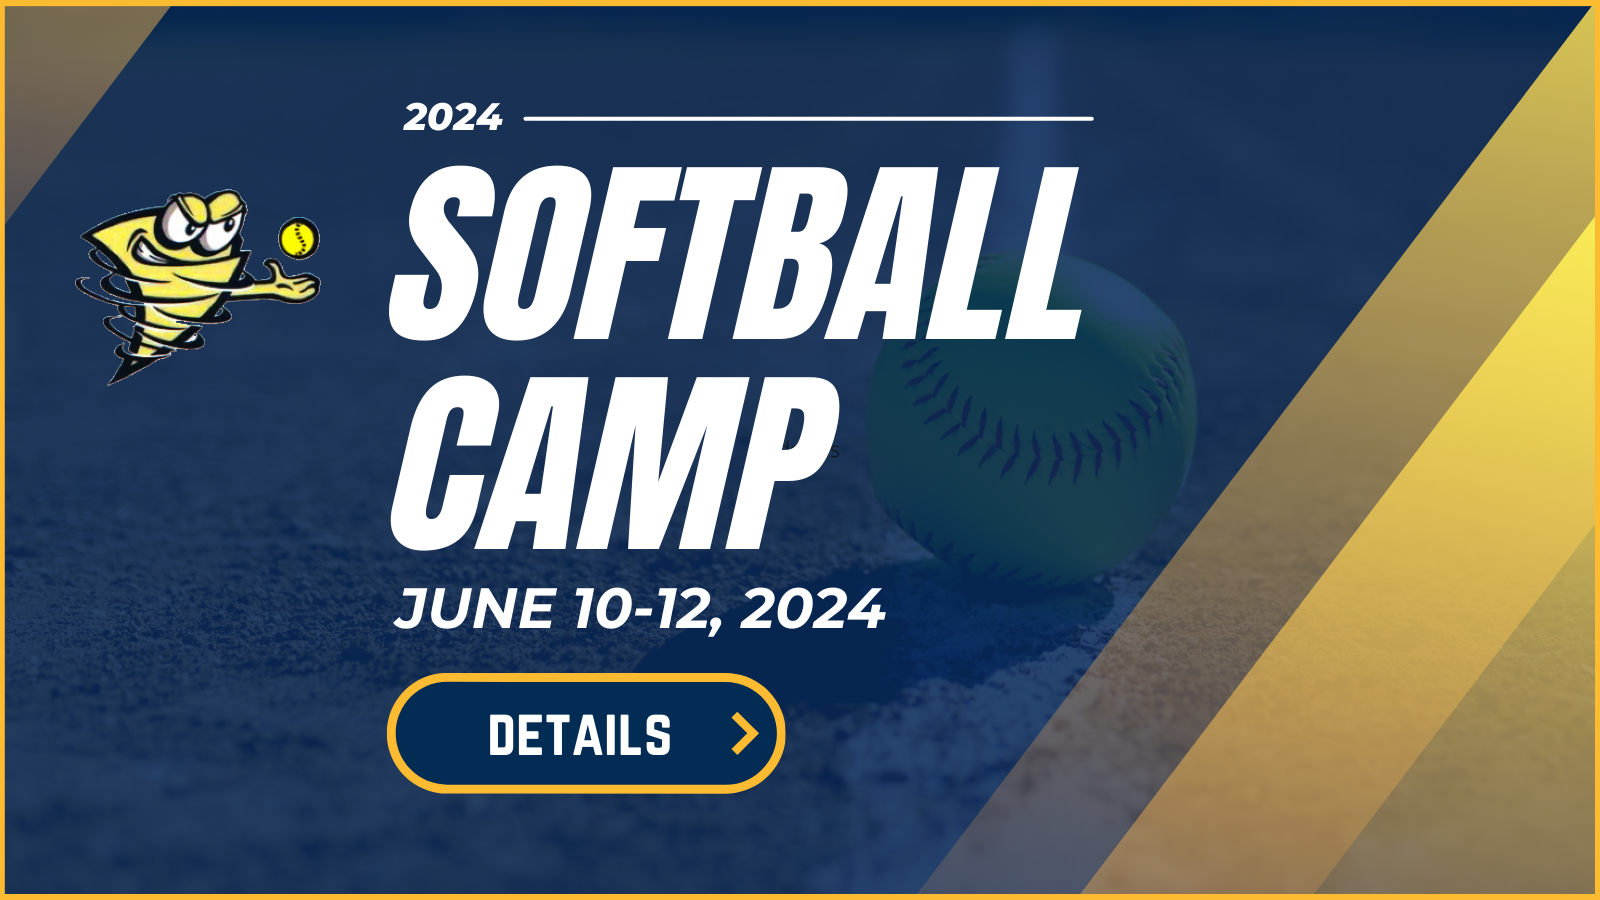 June 10-12, 2024 Softball Camp